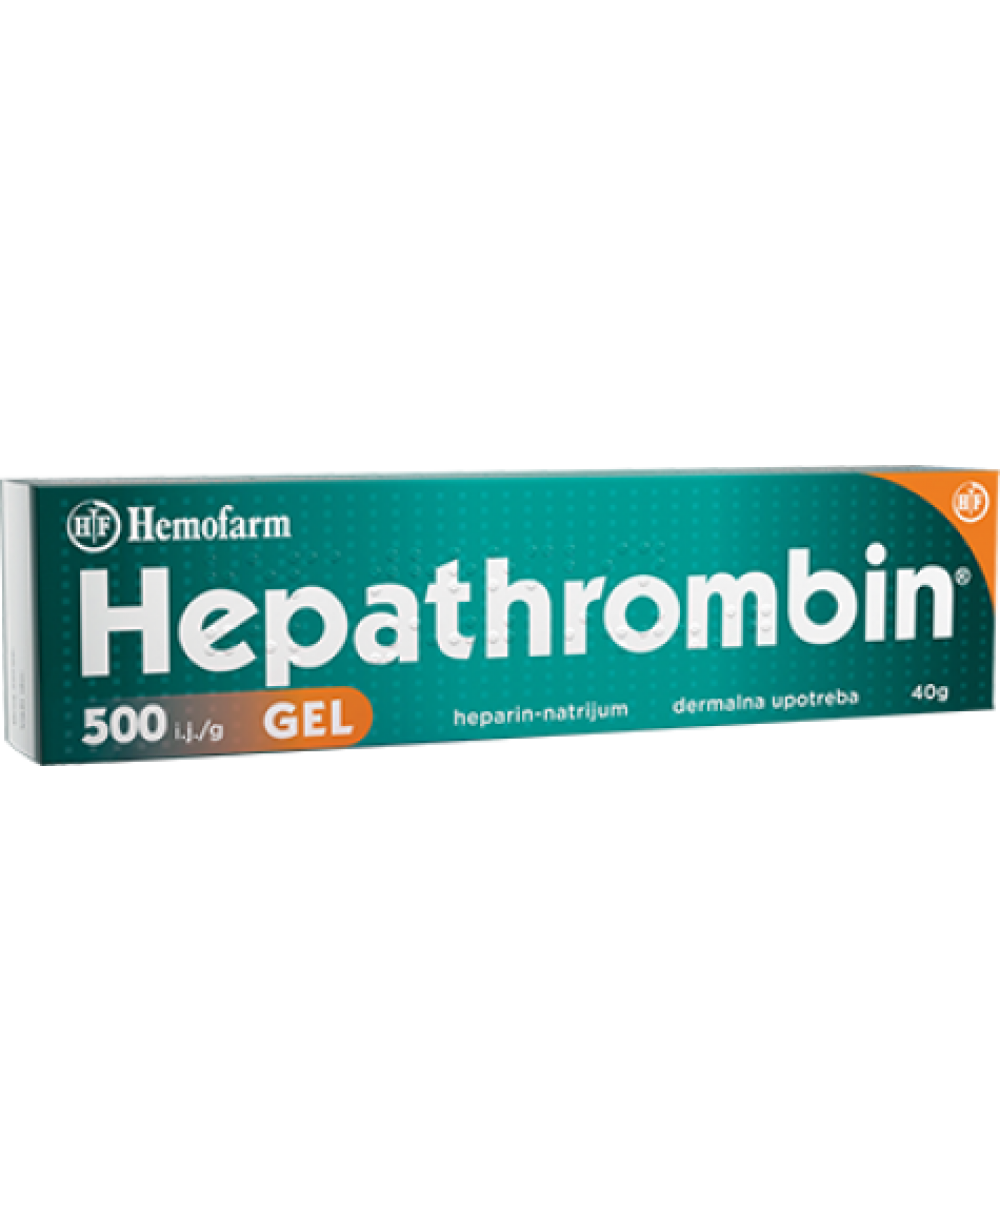 Hepathrombin 500UI/g gel x 40g (Hemofarm